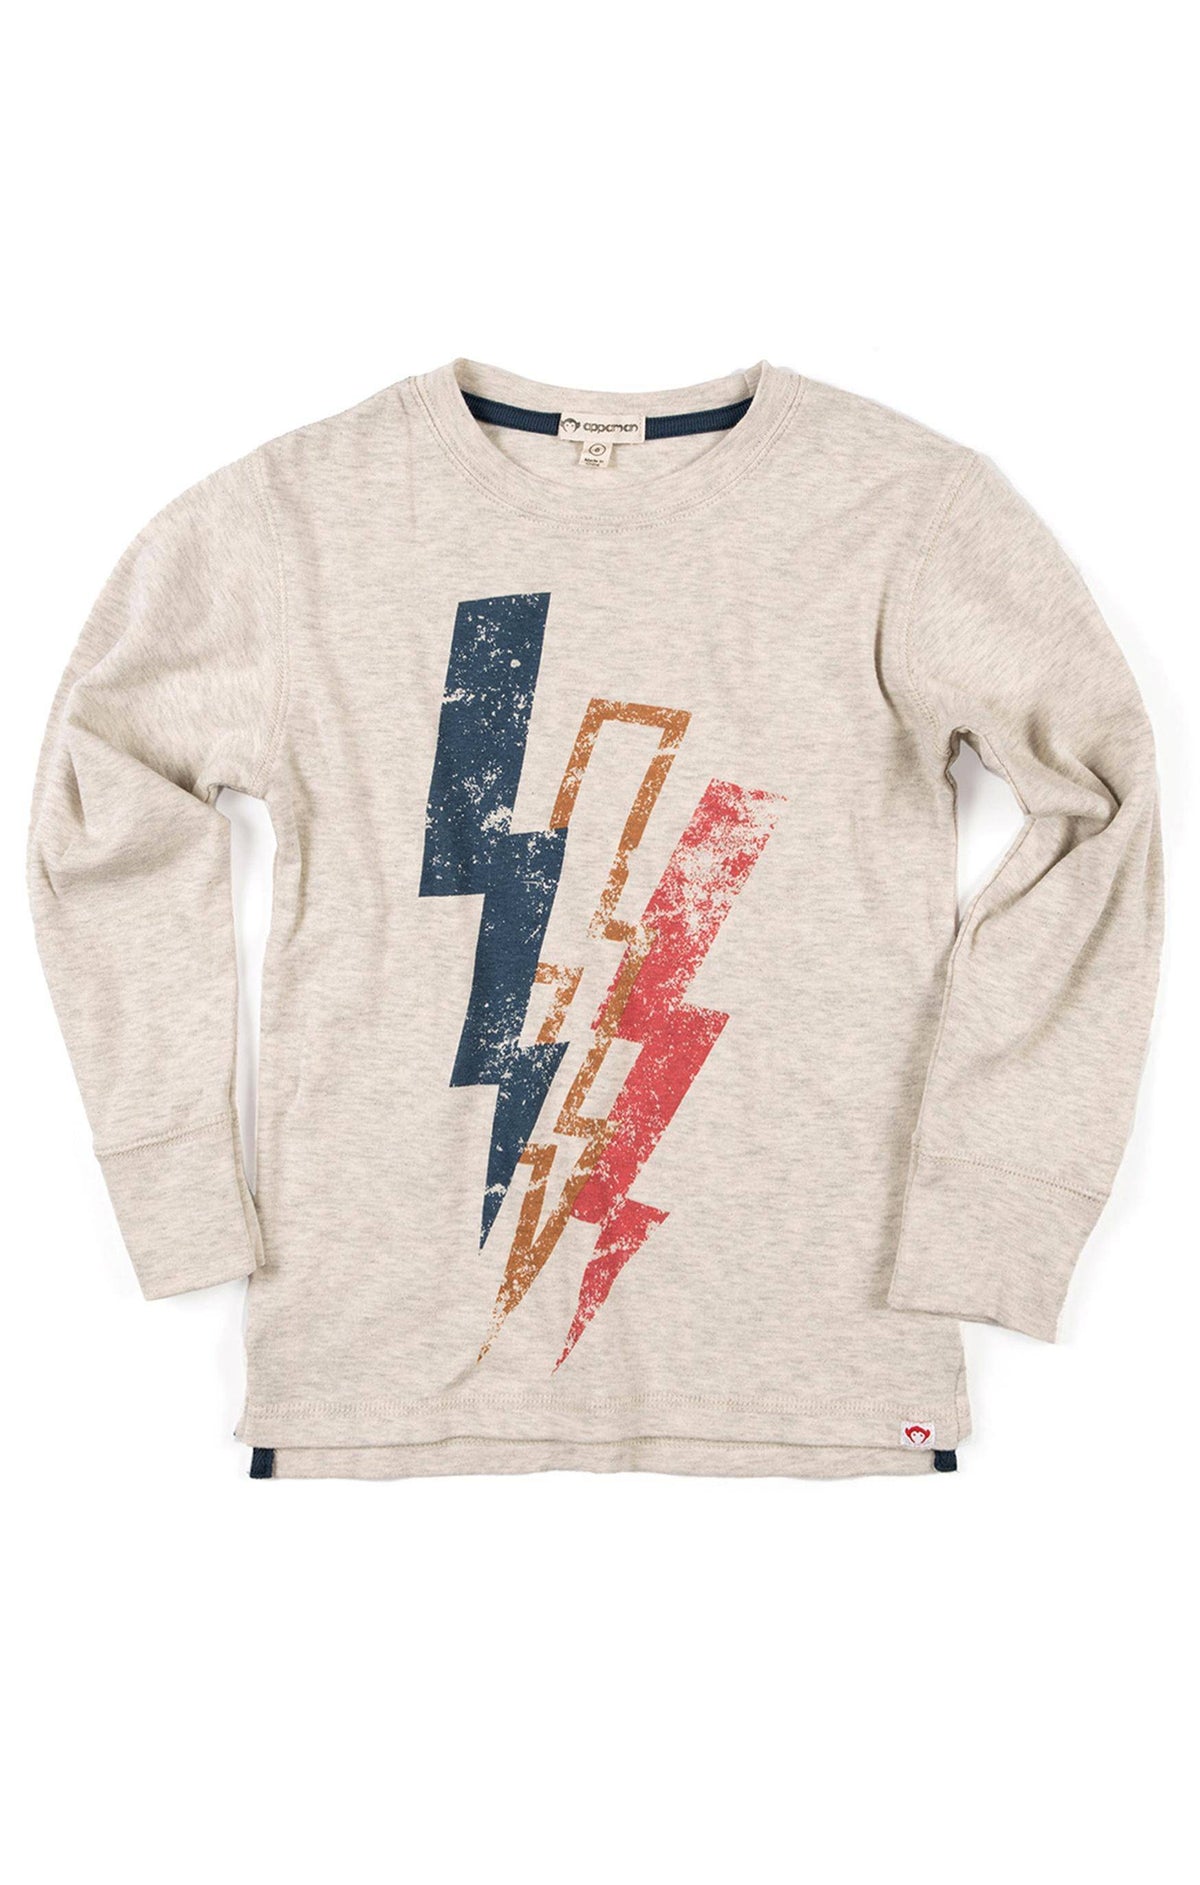 Lightning Bolt T-Shirt for Kids Boys Girls Men and Women